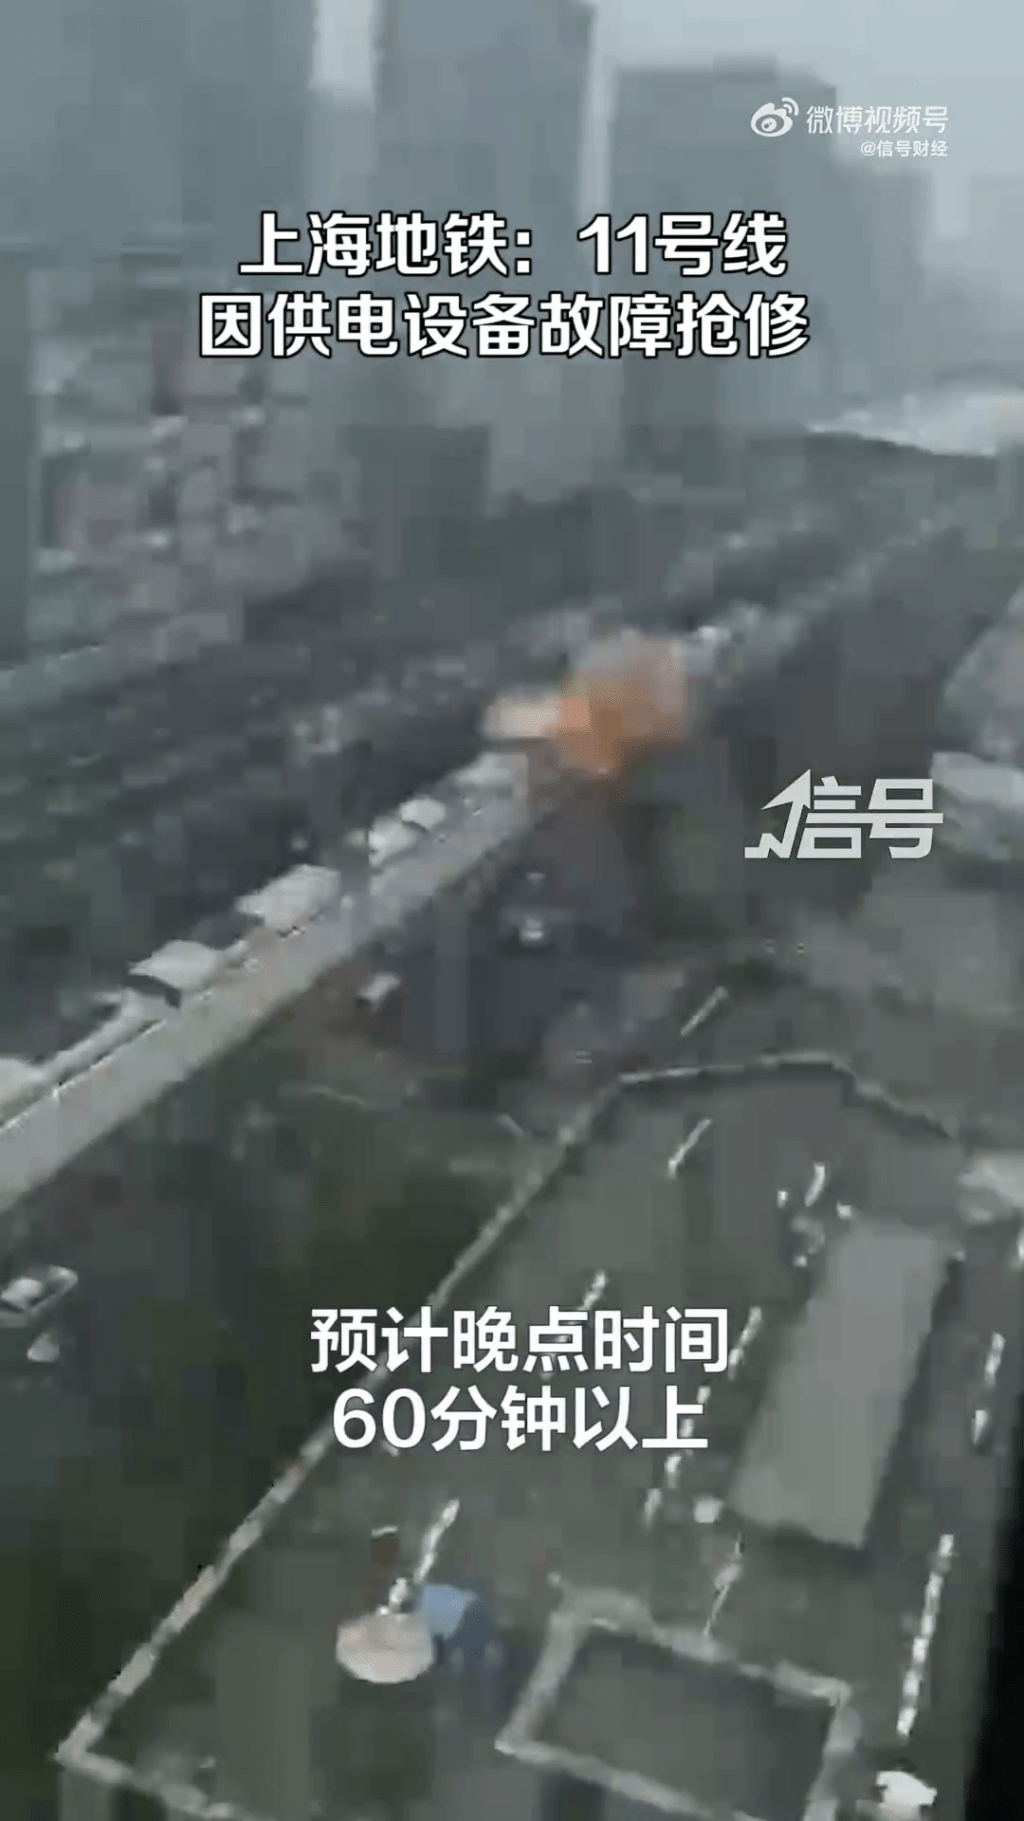 上海地铁称未引发火灾爆炸。目前，正在全力抢修中。